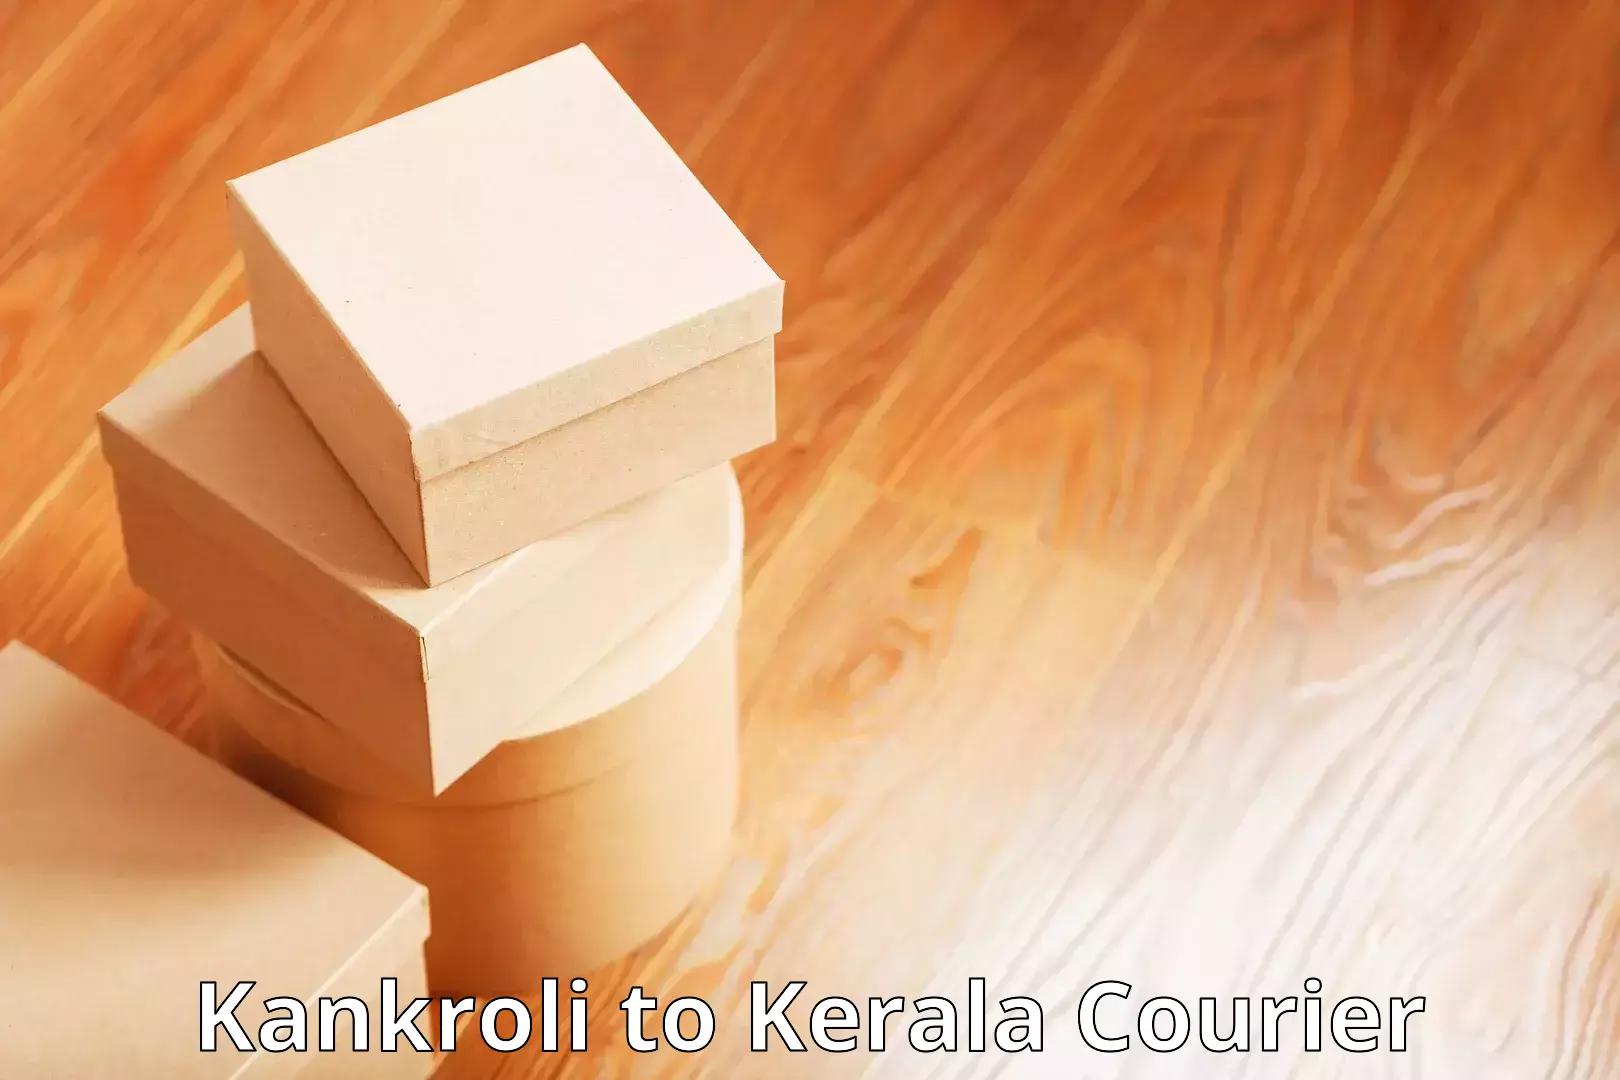 User-friendly courier app Kankroli to Kerala